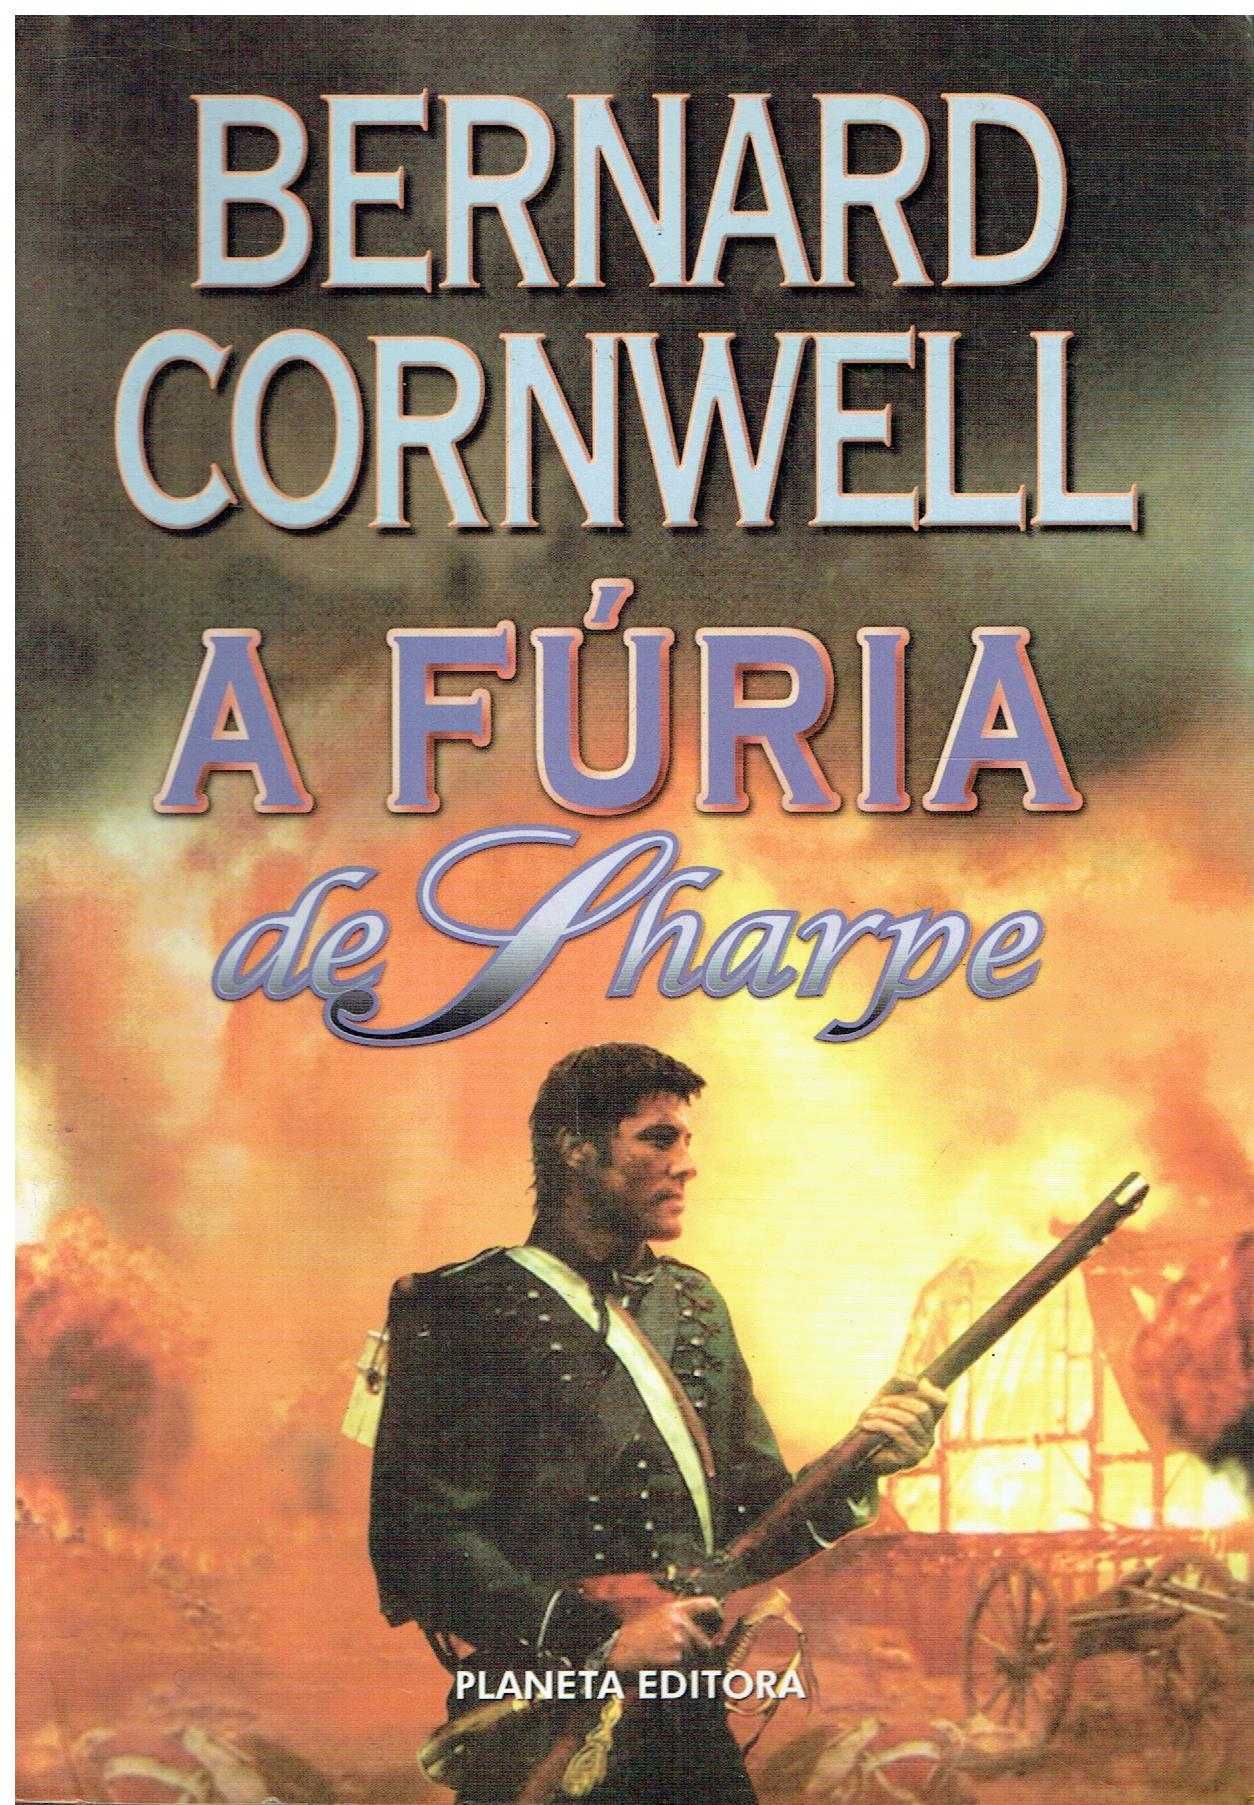 7744

A Fúria de Sharpe
de Bernard Cornwell